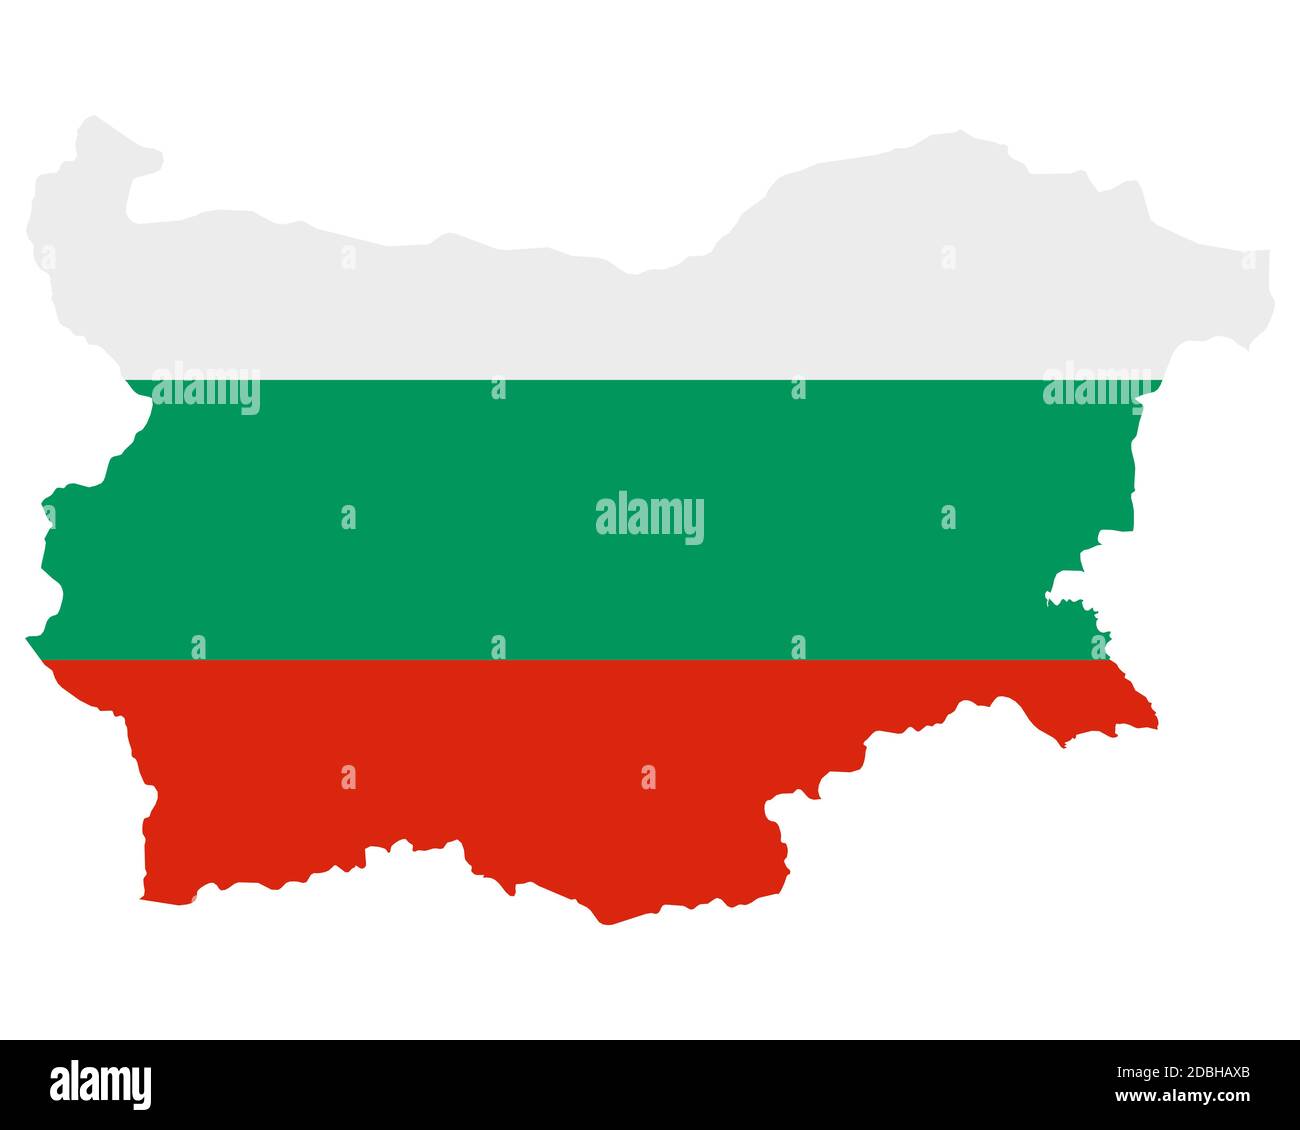 Fahne dans Landkarte von Bulgarien Banque D'Images